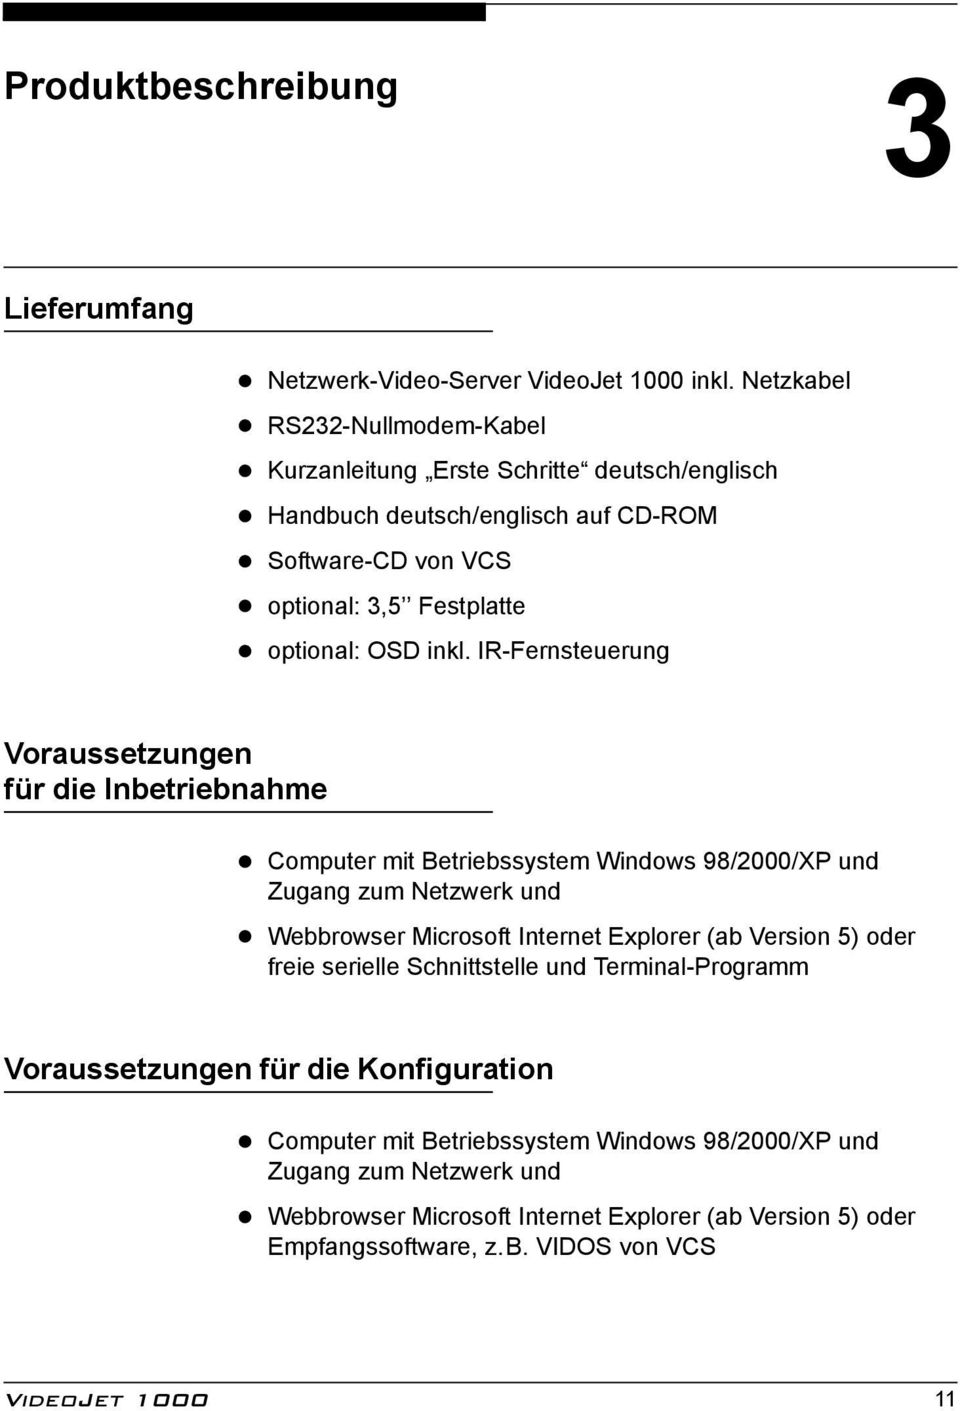 Computer mit Betriebssystem Windows 98/2000/XP und Zugang zum Netzwerk und!